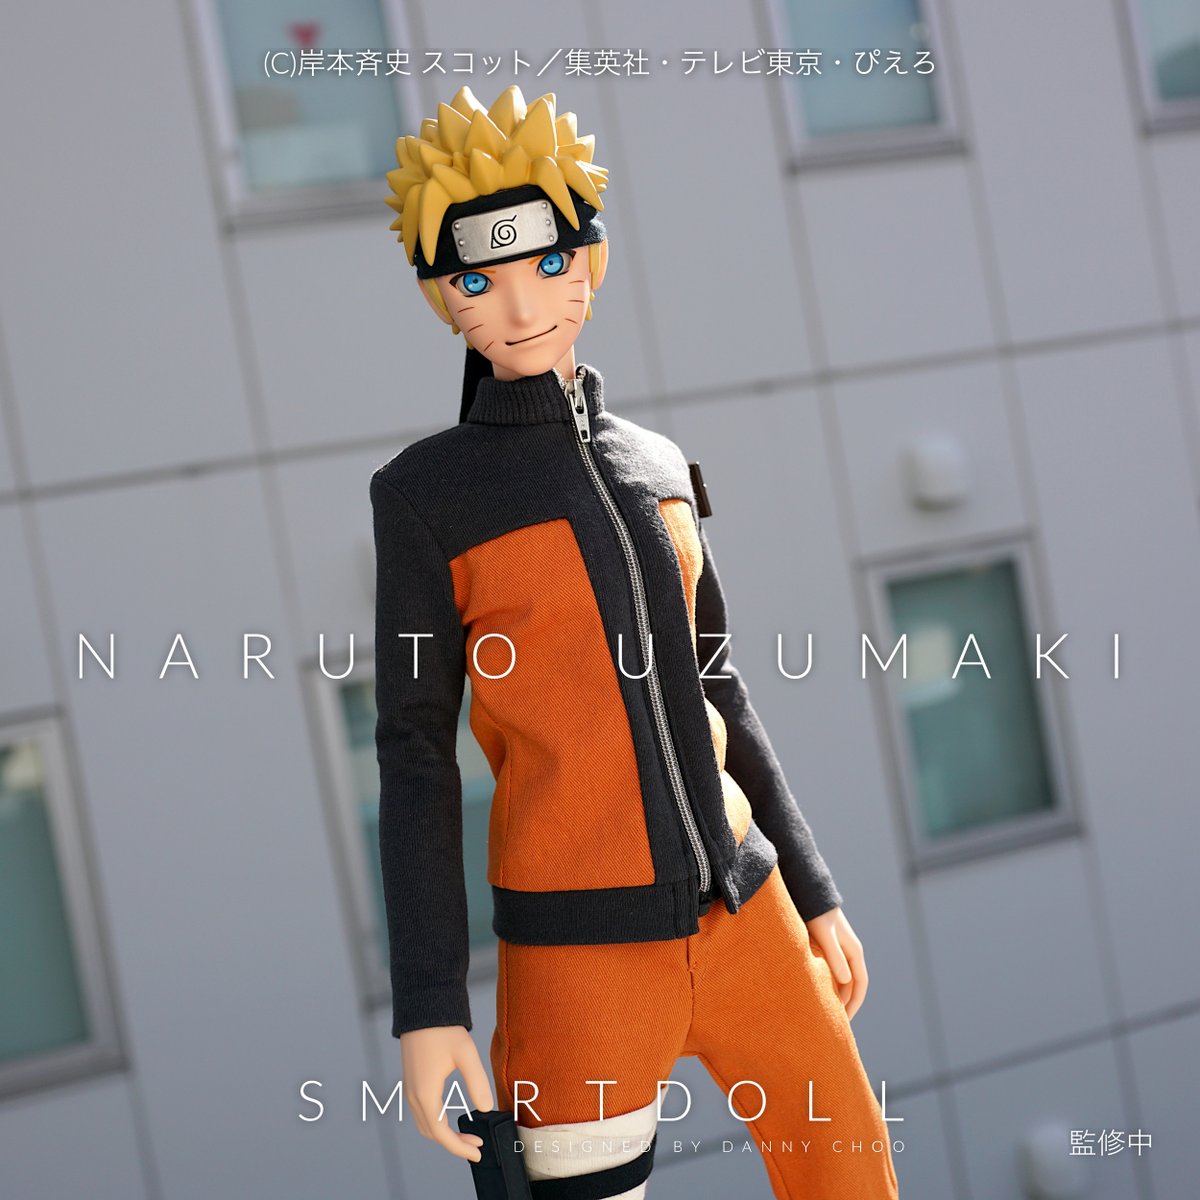 Danny Choo 国内外の人気タイトル Naruto ナルト の主人公である うずまきナルト がスマートドールになって登場 2月9日のワンフェスのメガハウスブースで初展示 インスターで写真がもっと見れる メイクはミスケイ 造形は坂島十谷 Naruto